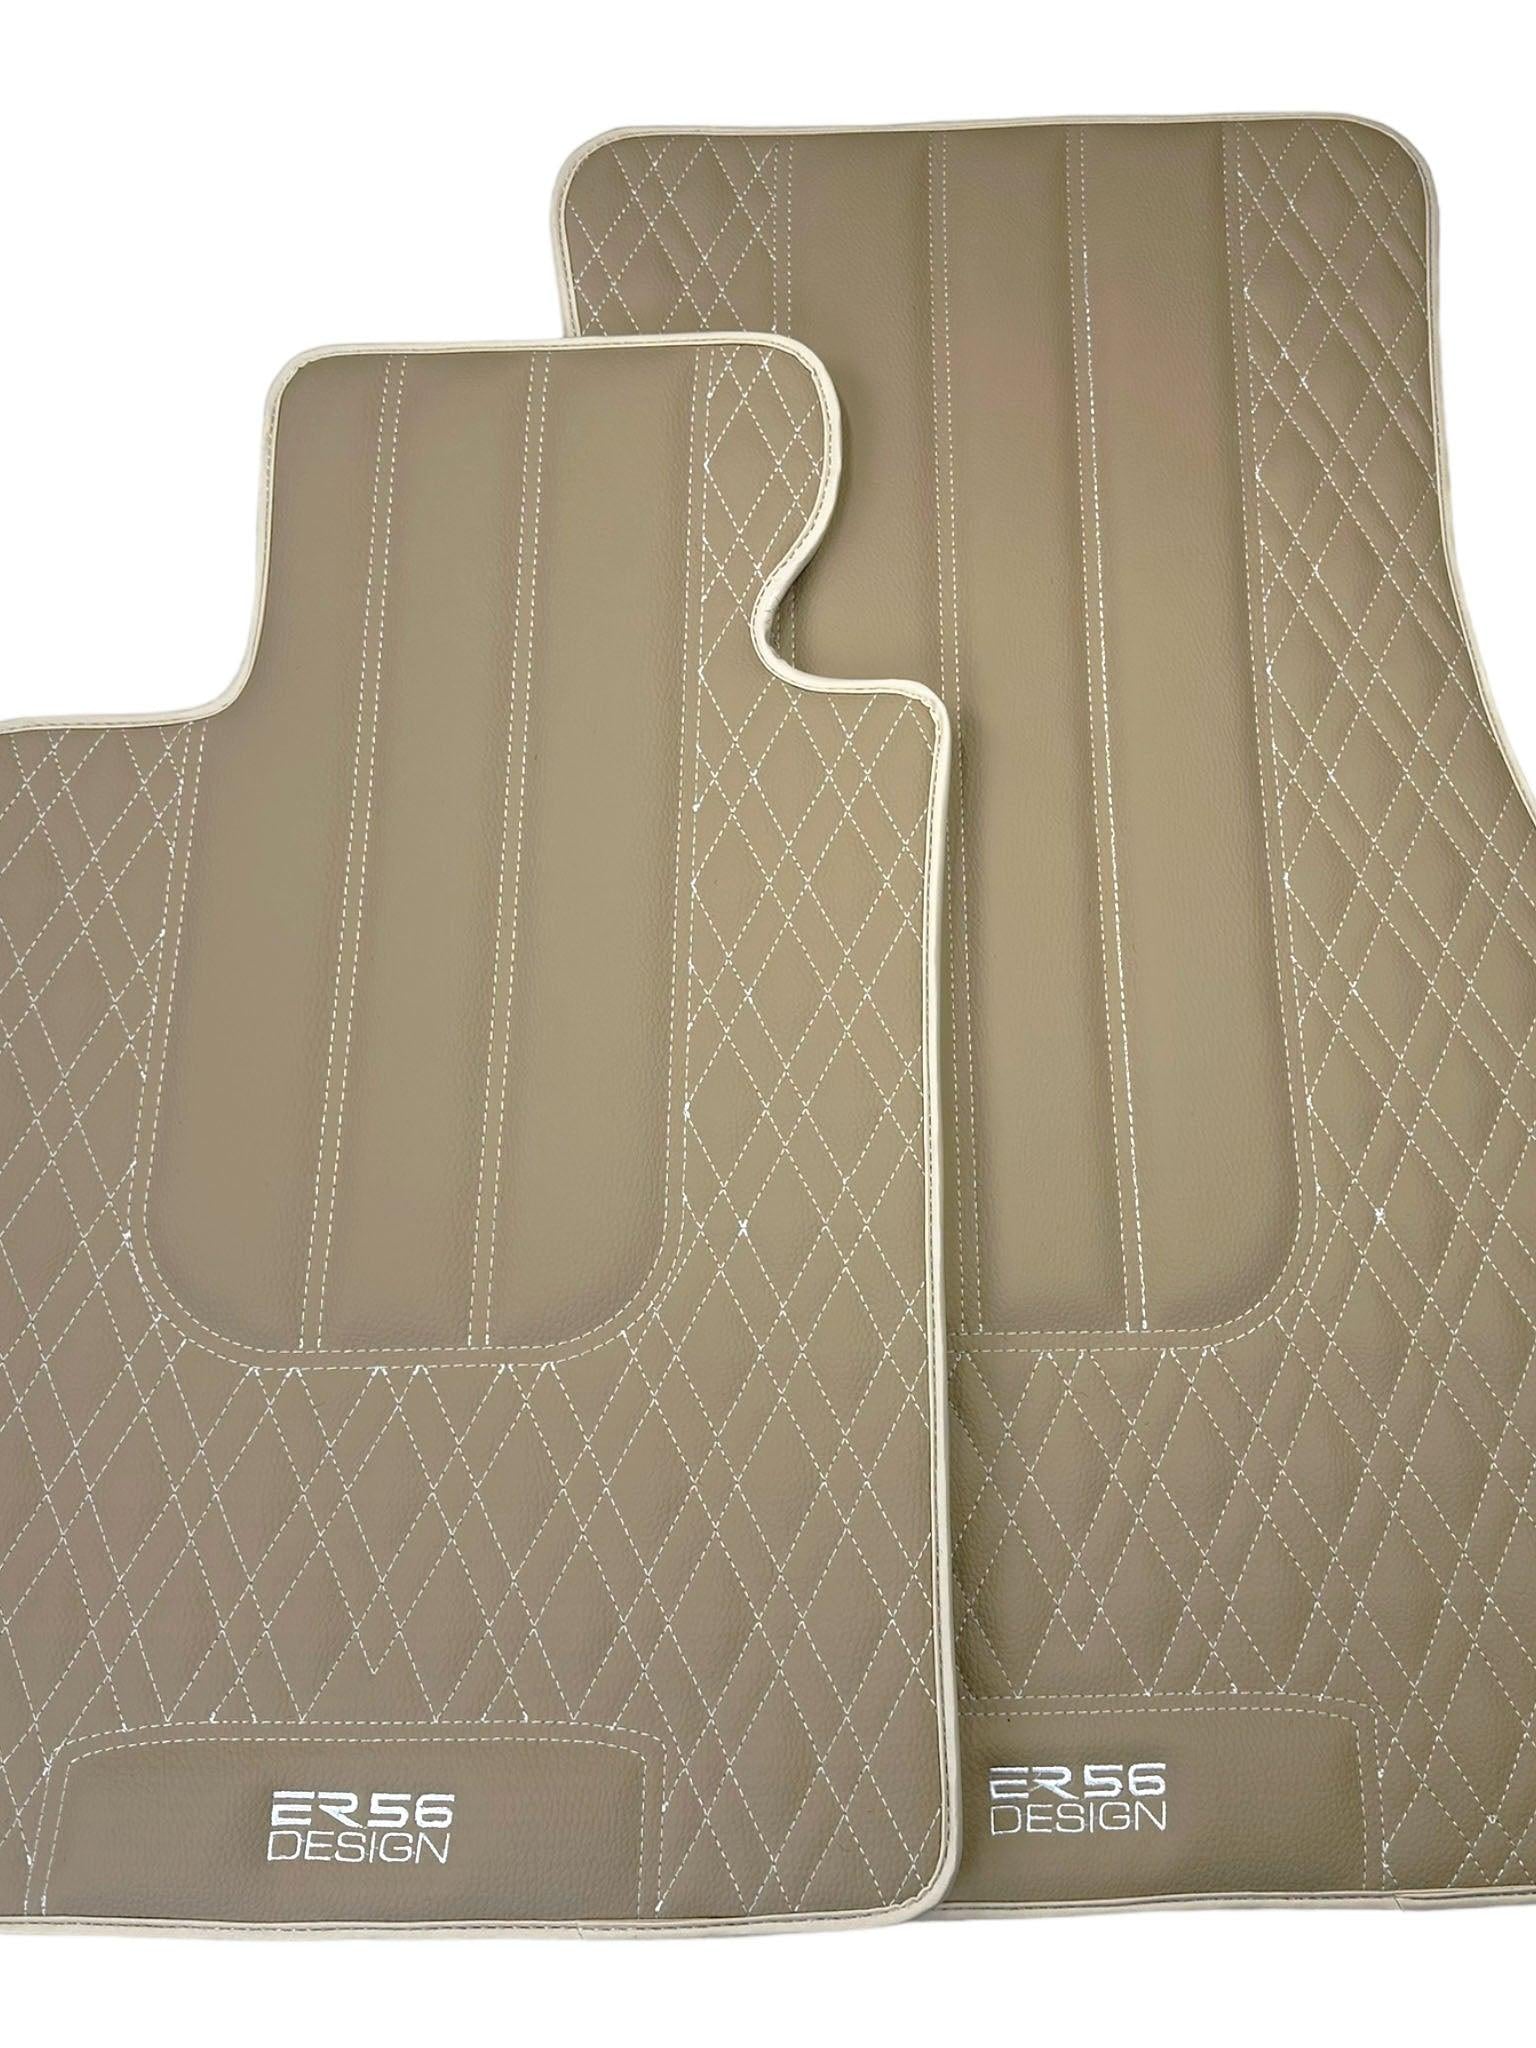 Beige Leather Floor Floor Mats For BMW X5 Series E70